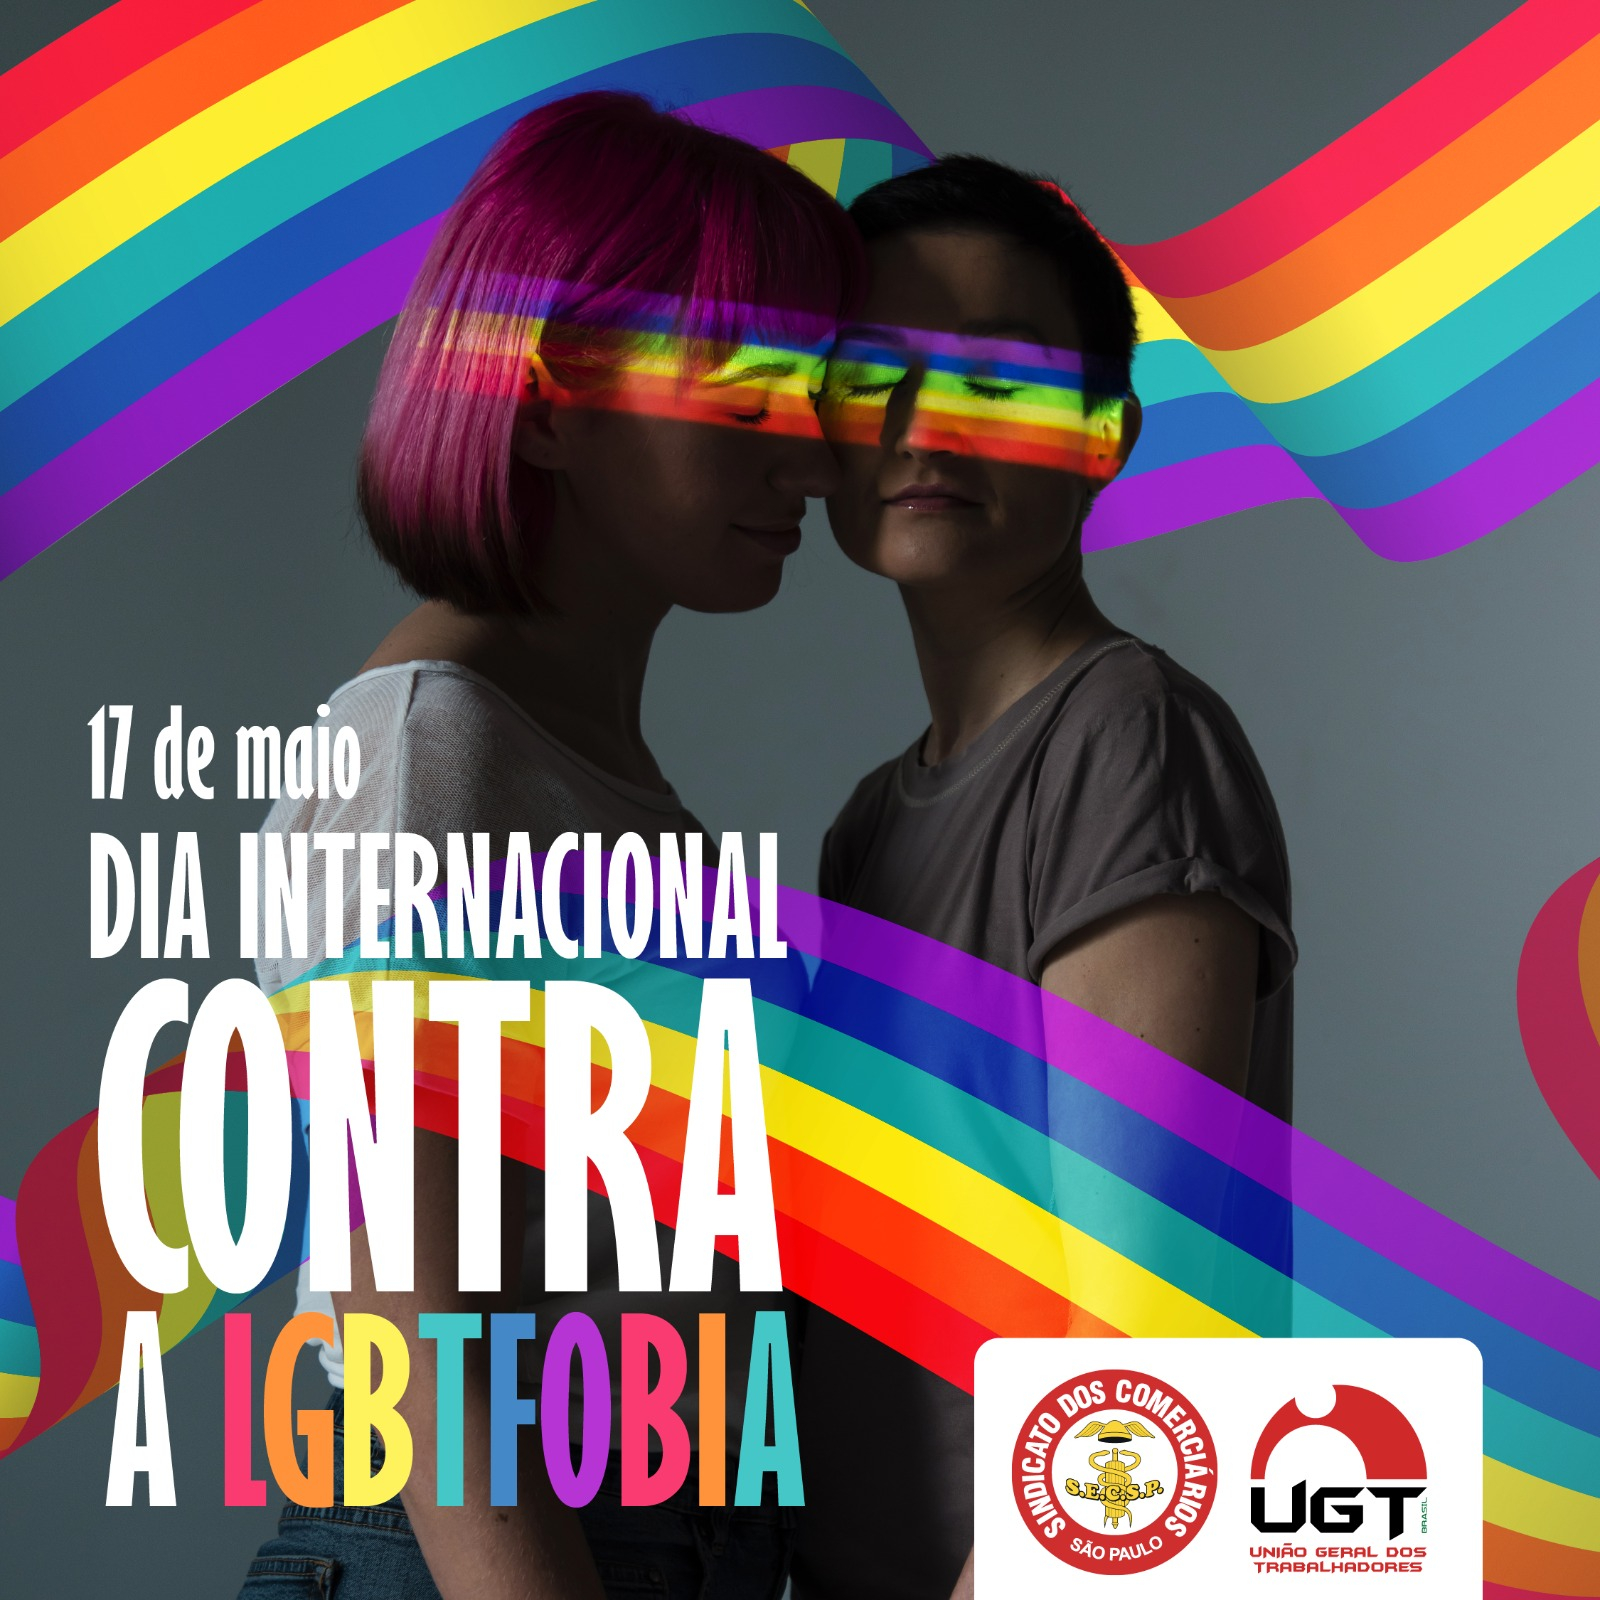 17 de maio: Dia internacional contra a LGBTFOBIA